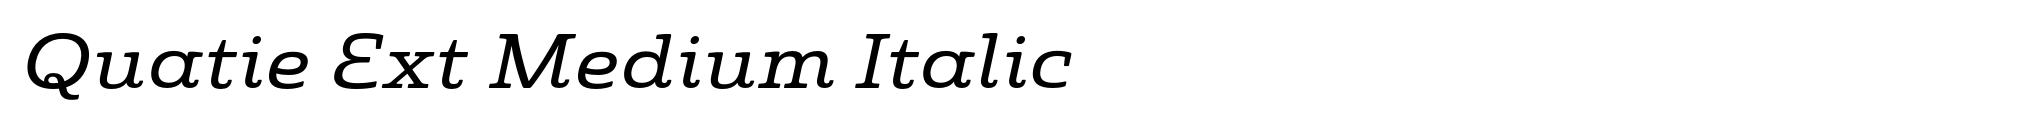 Quatie Ext Medium Italic image